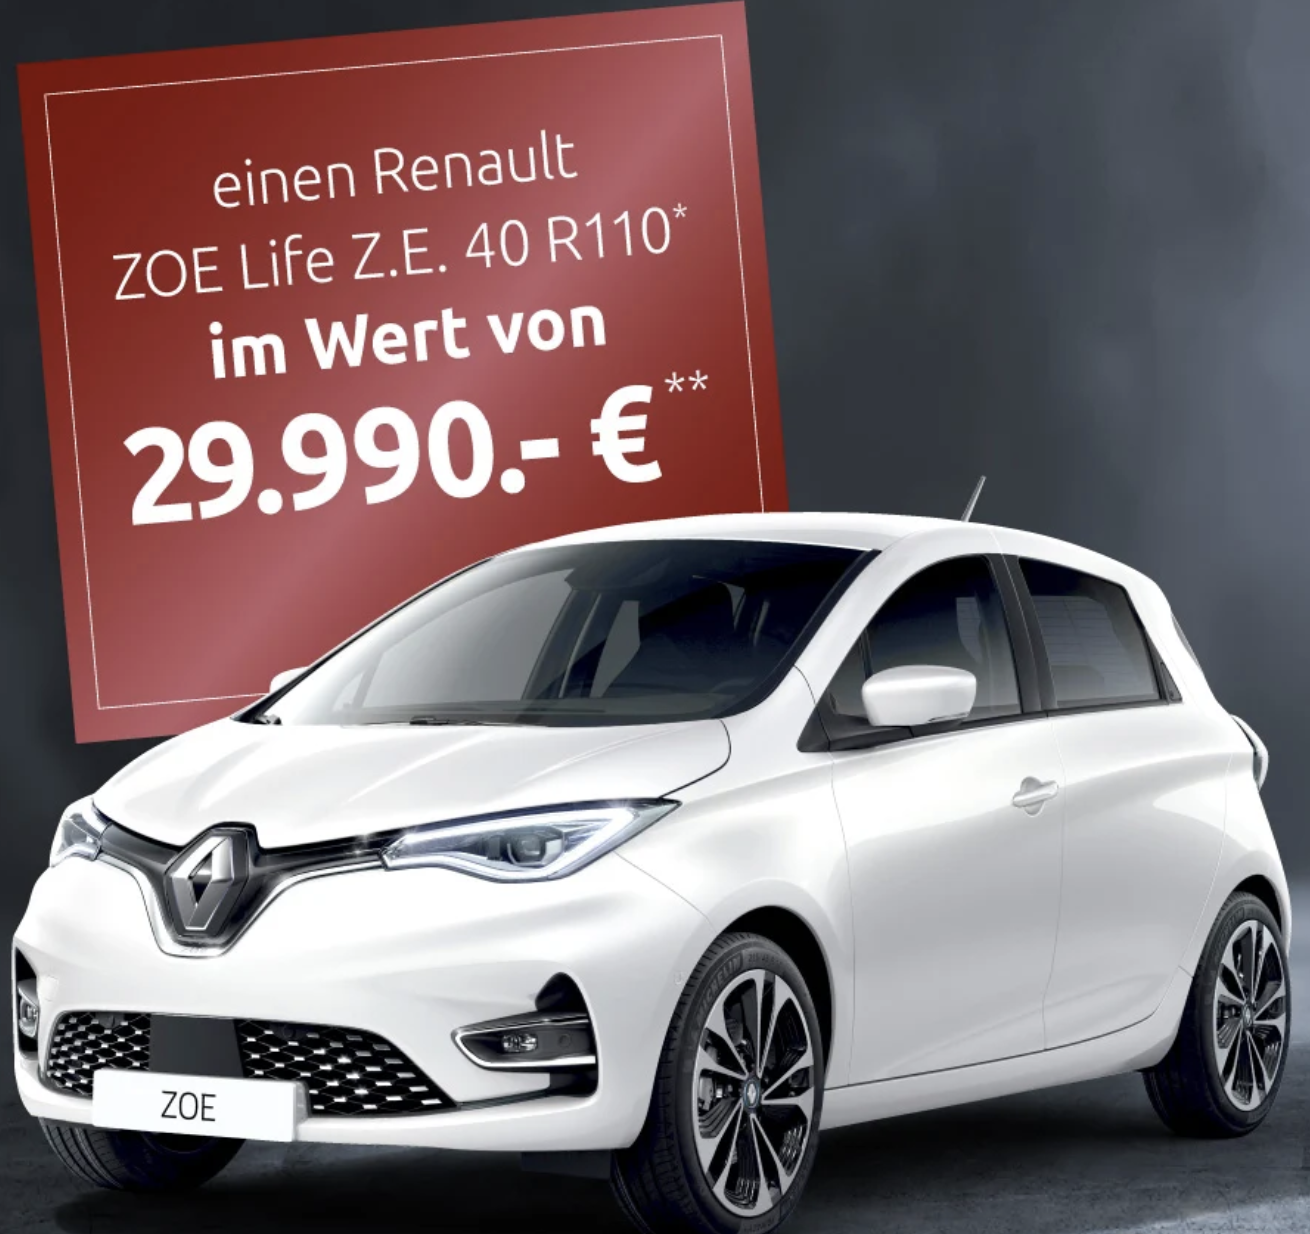 Interliving Gewinnspiel: Renault ZOE Life zu gewinnen